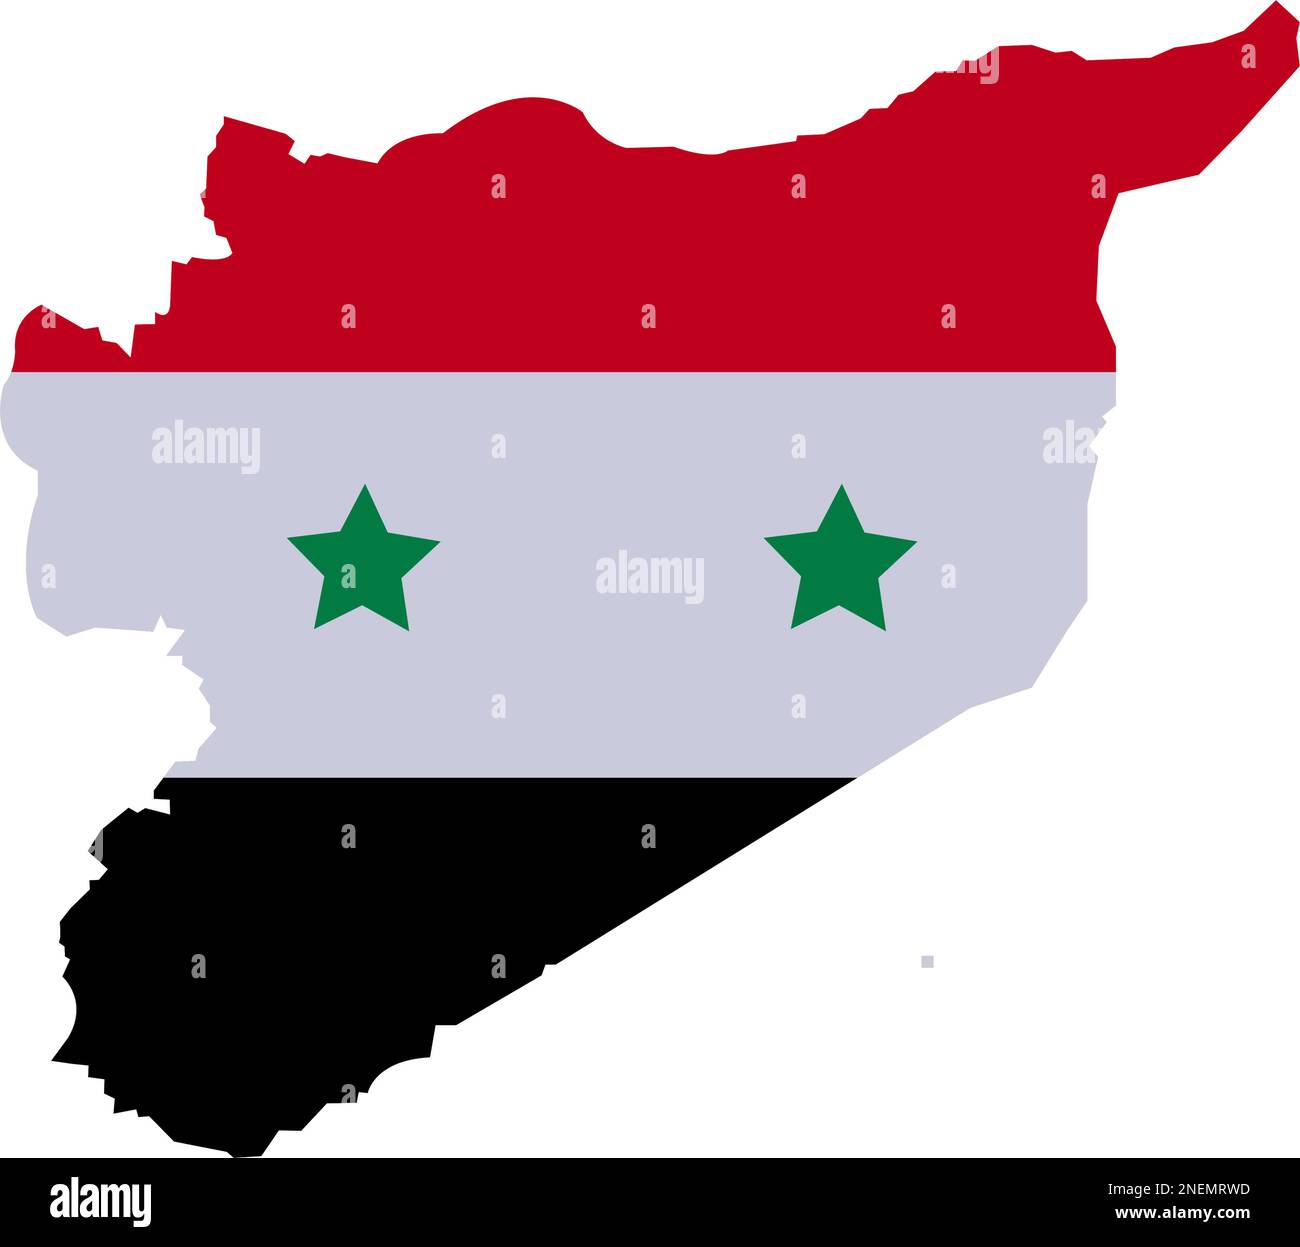 Mappa della Siria con Alto dettagliato. Mappa della Siria con simboli di bandiera nazionale province siriane. Mappa siriana con colore rosso bianco e nero a tre colori e stella Illustrazione Vettoriale